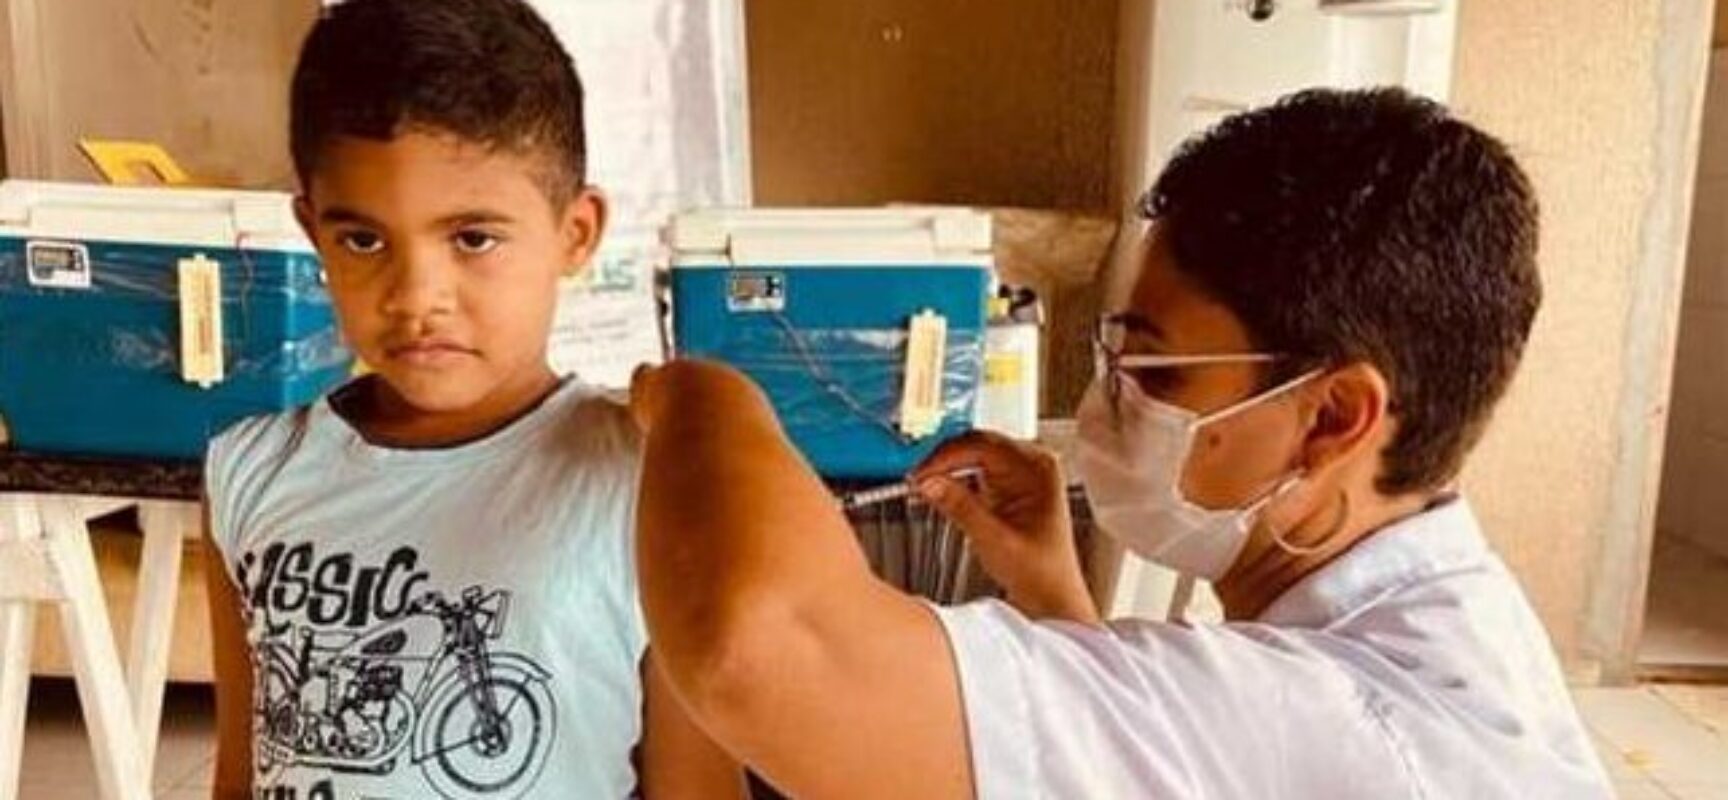 Vacina contra a Covid-19 entra no calendário infantil, informa Sesau